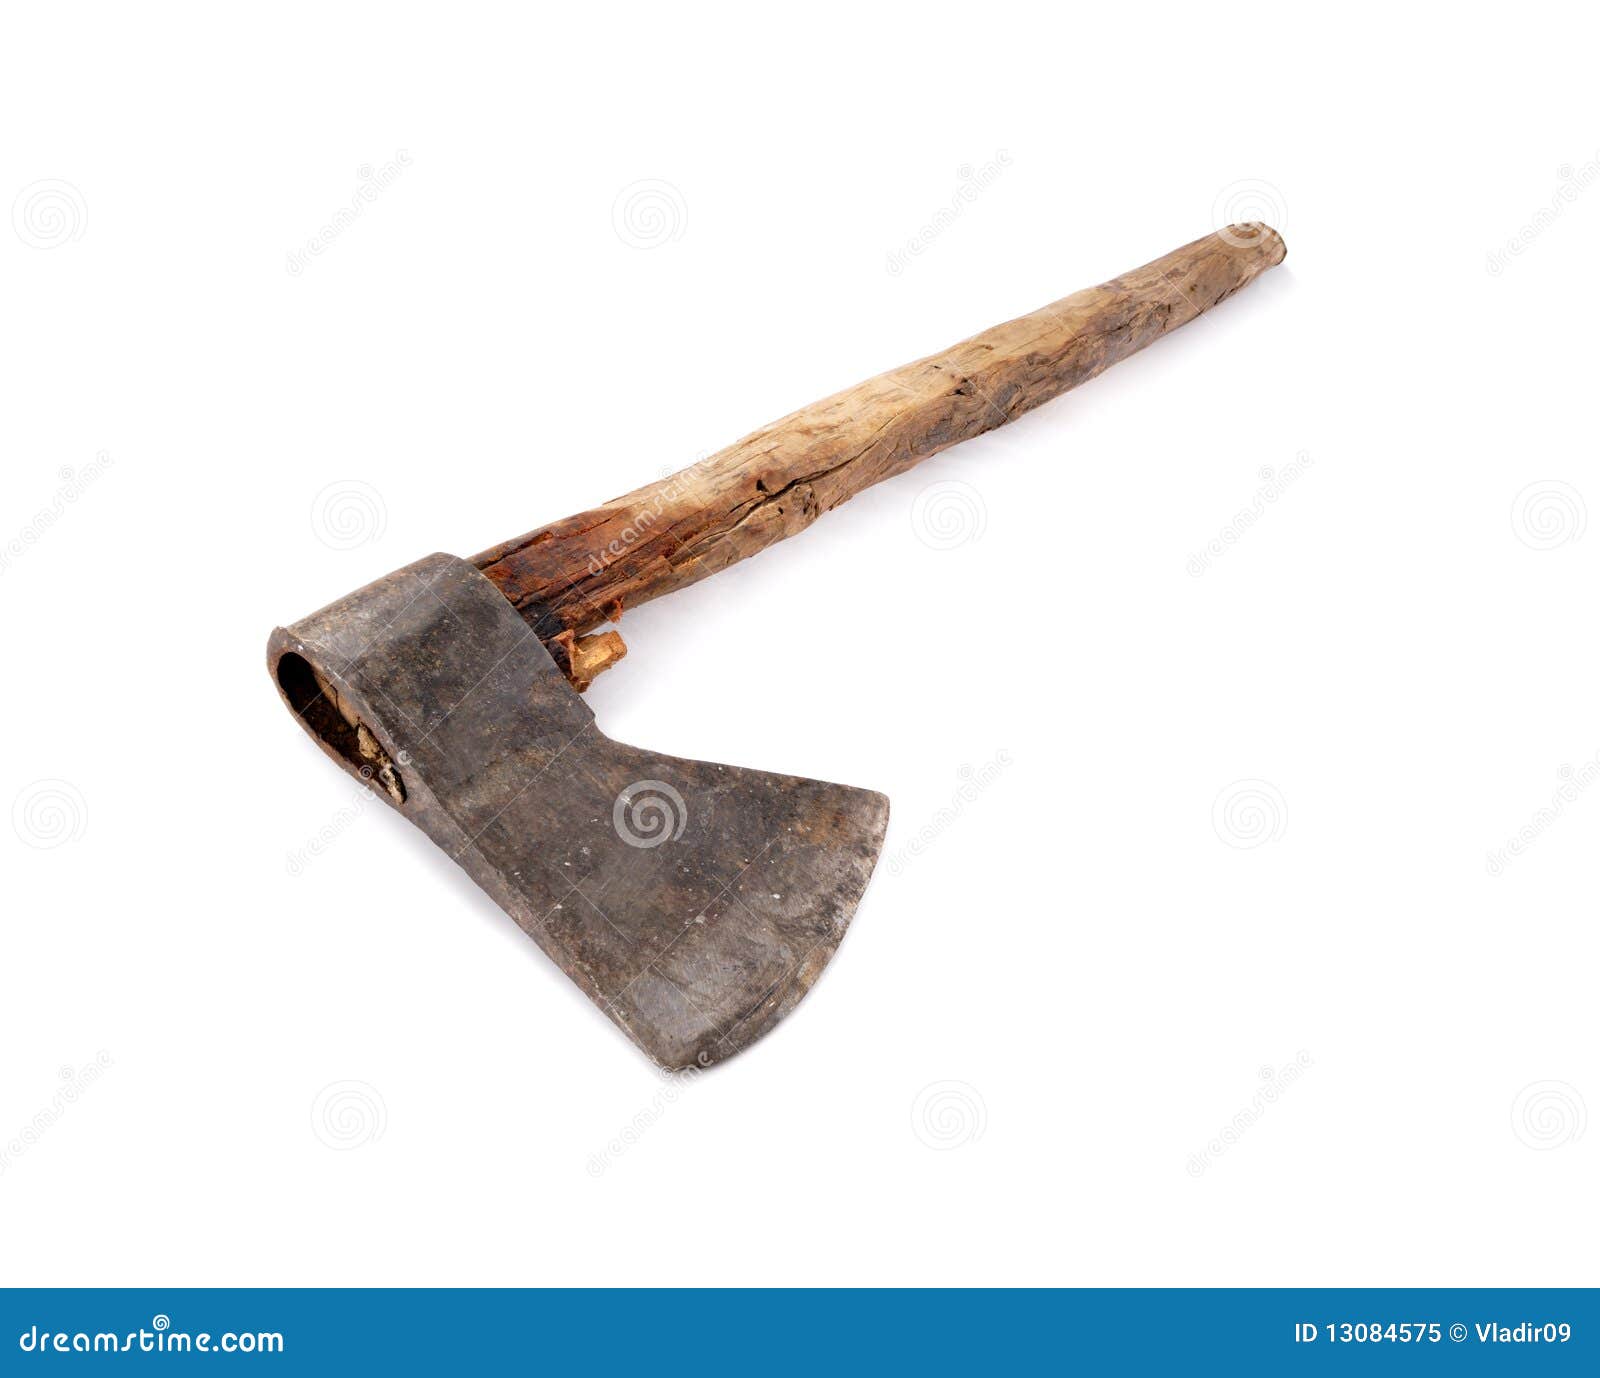 Old axe stock image. Image of wood, handle, steel, metal - 13084575